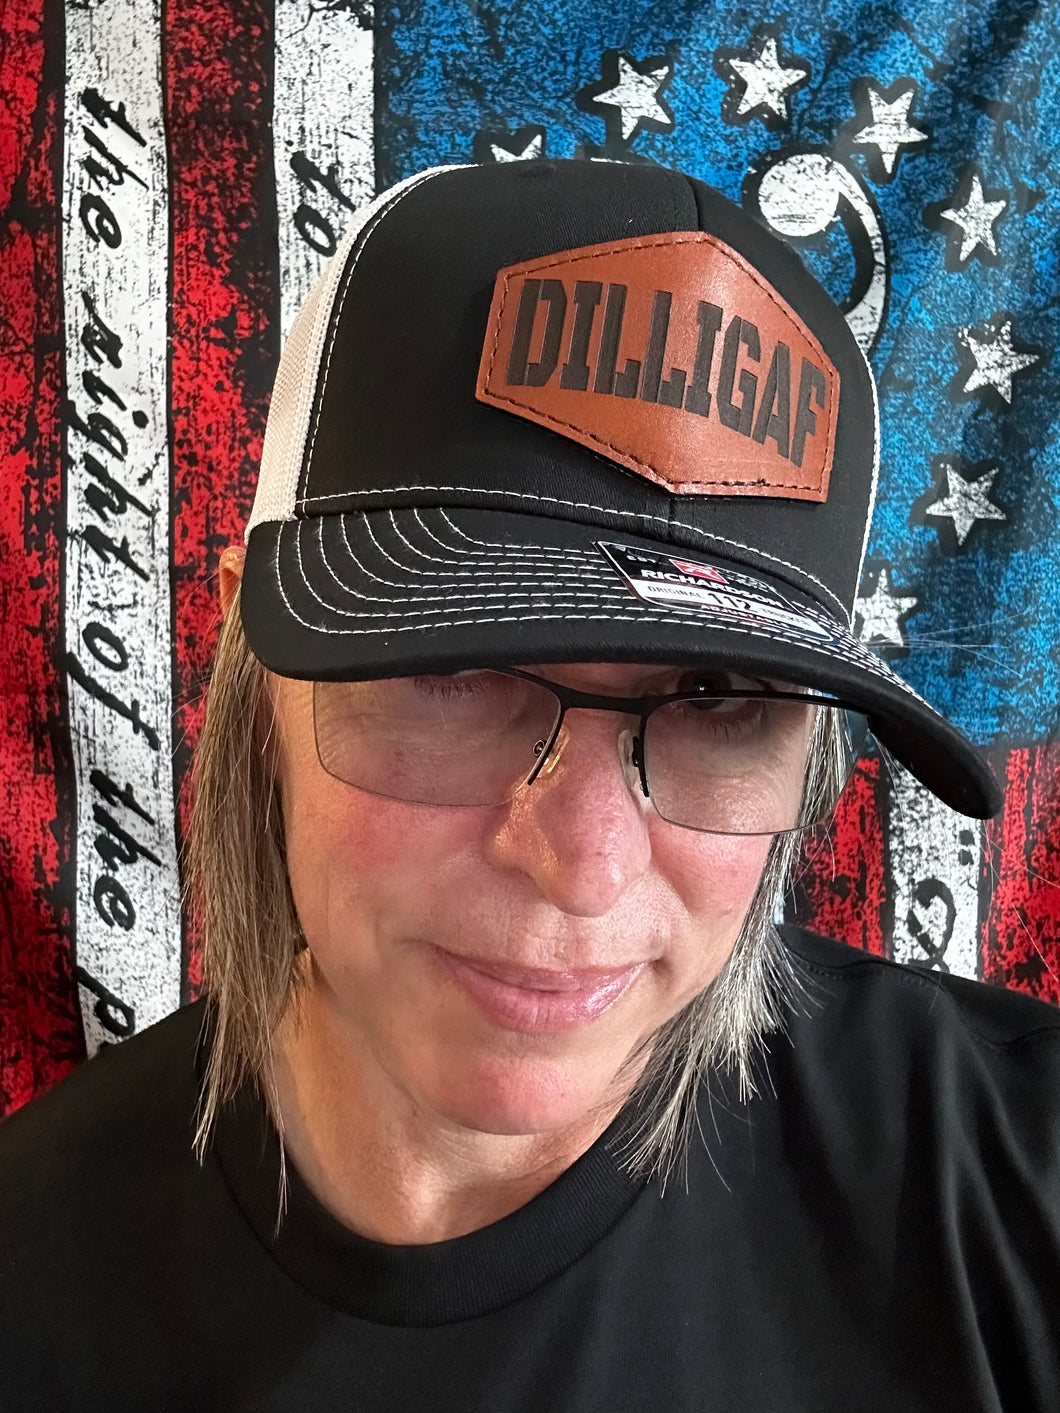 DILLIGAF Trucker Hats – PatriotEngravingUSA